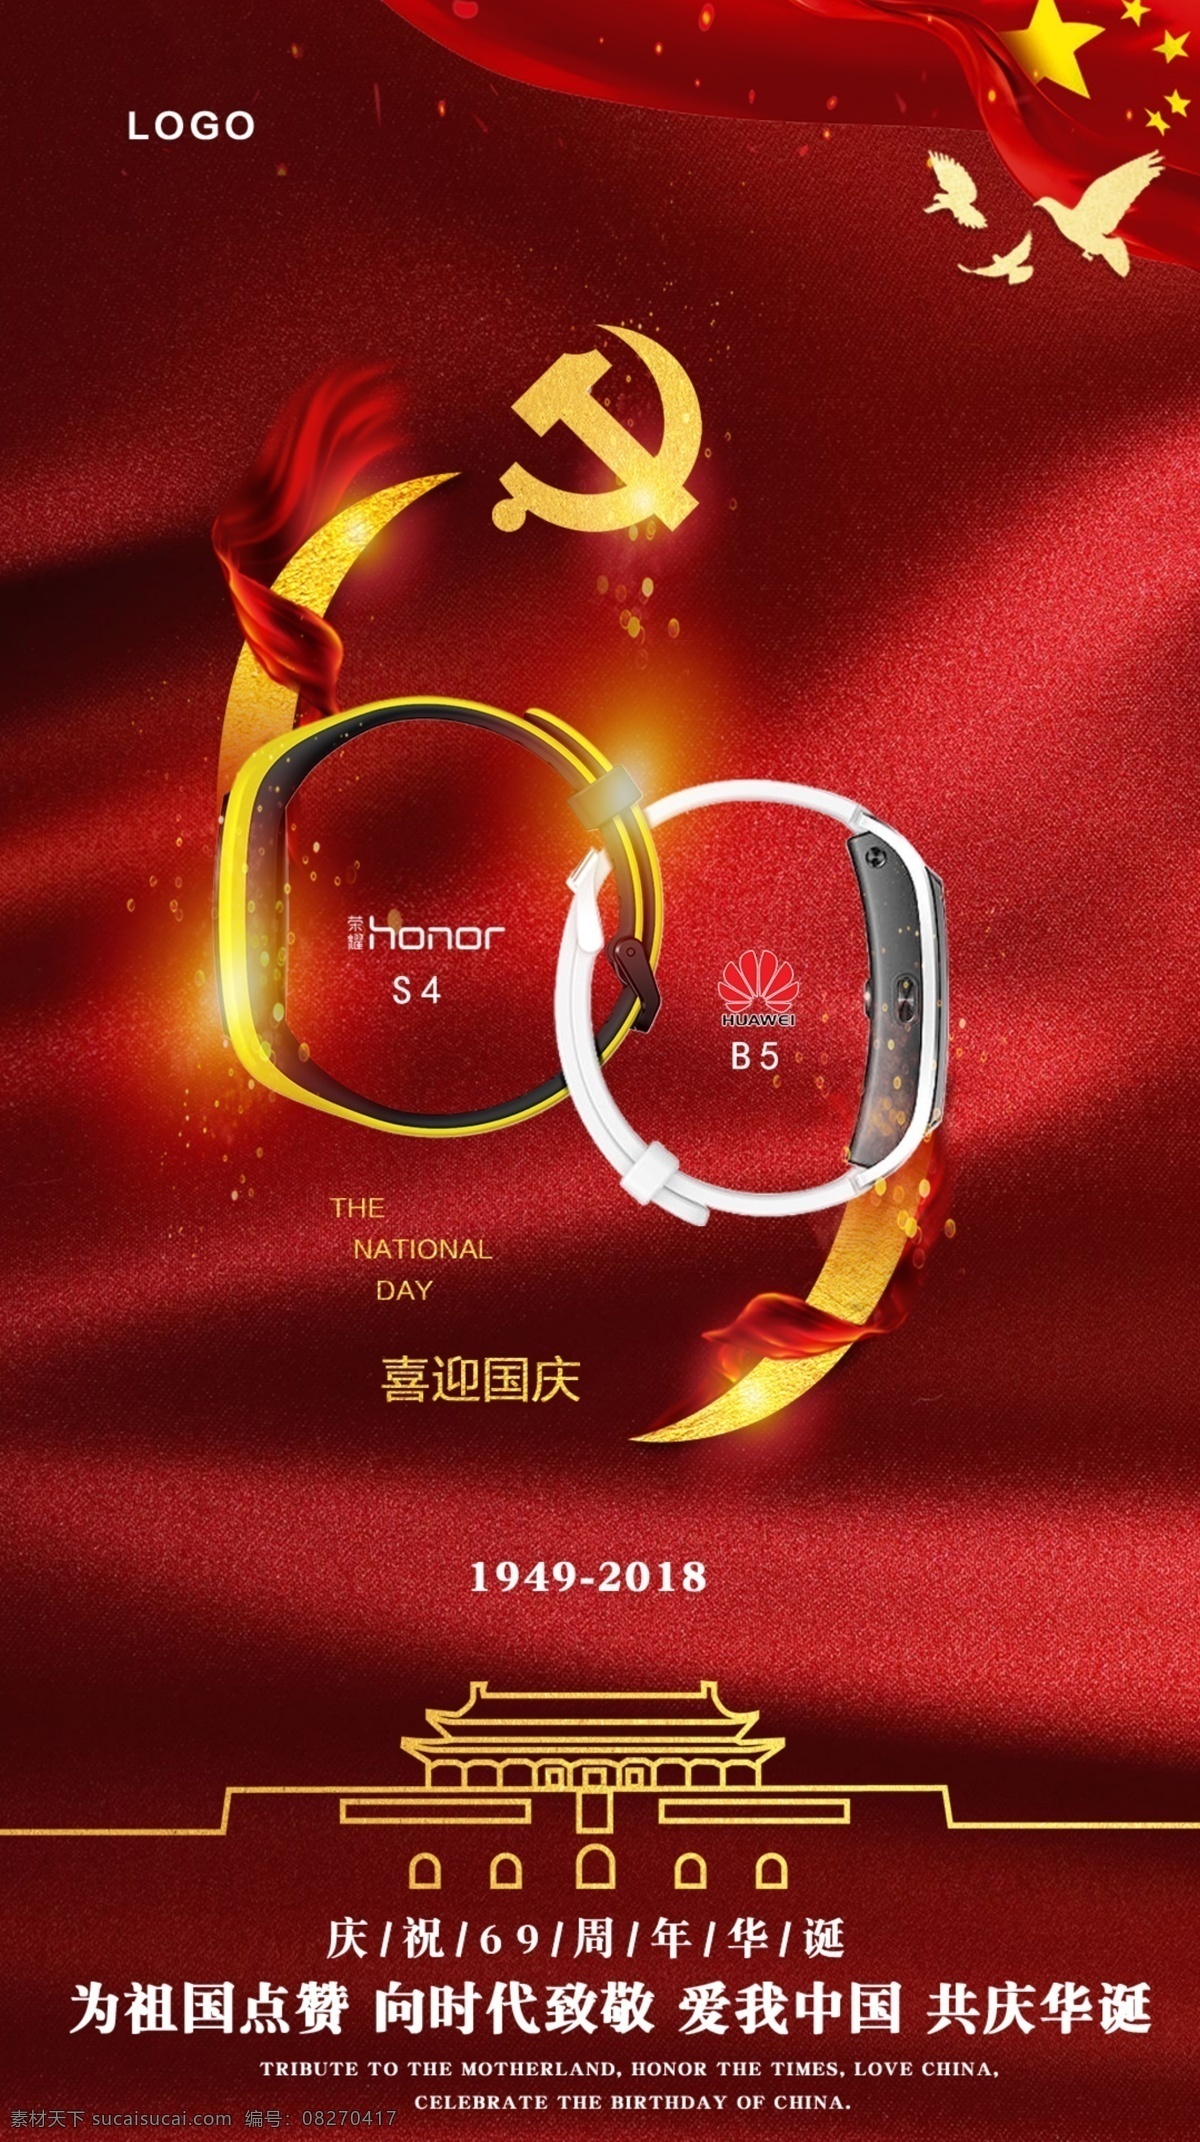 国庆节 节假日 海报 产品海报 版式设计 红 手机配图